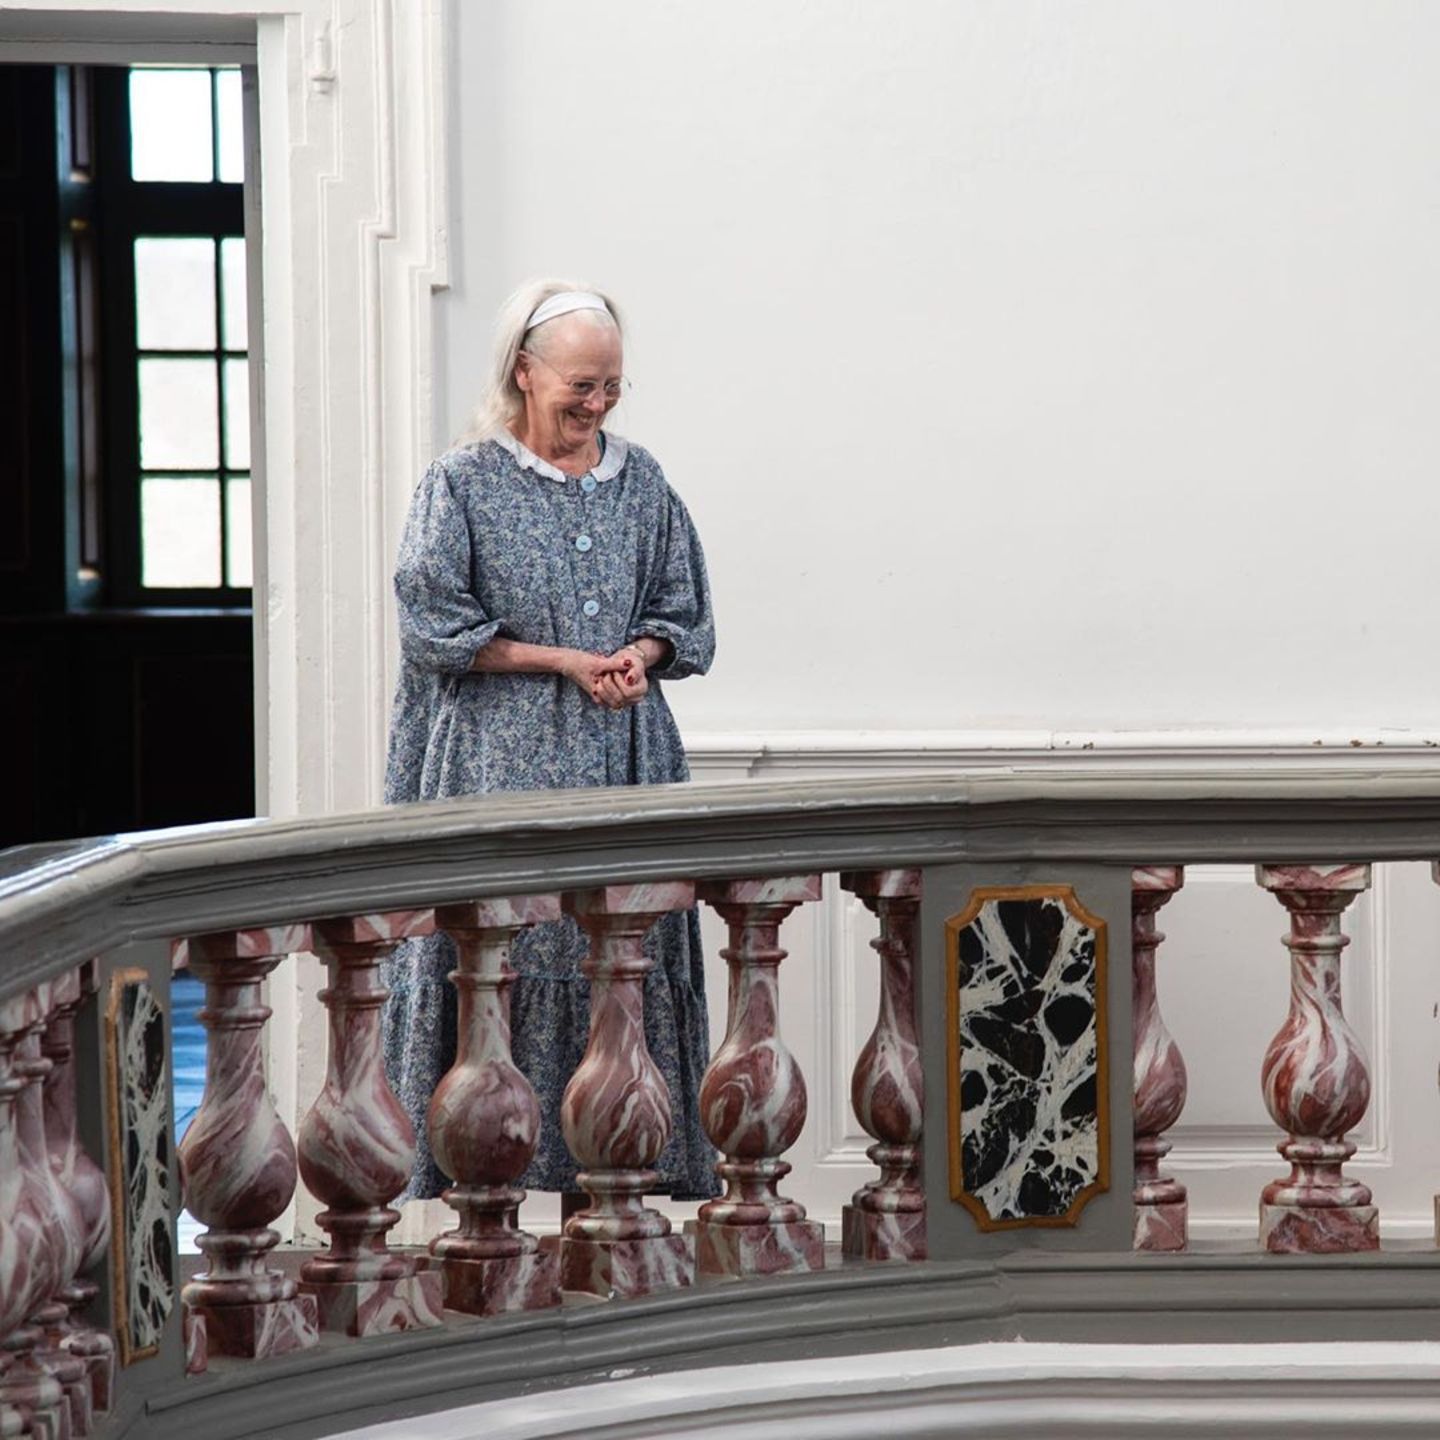 Königin Margrethe an ihrem 80. Geburtstag im Morgengewand